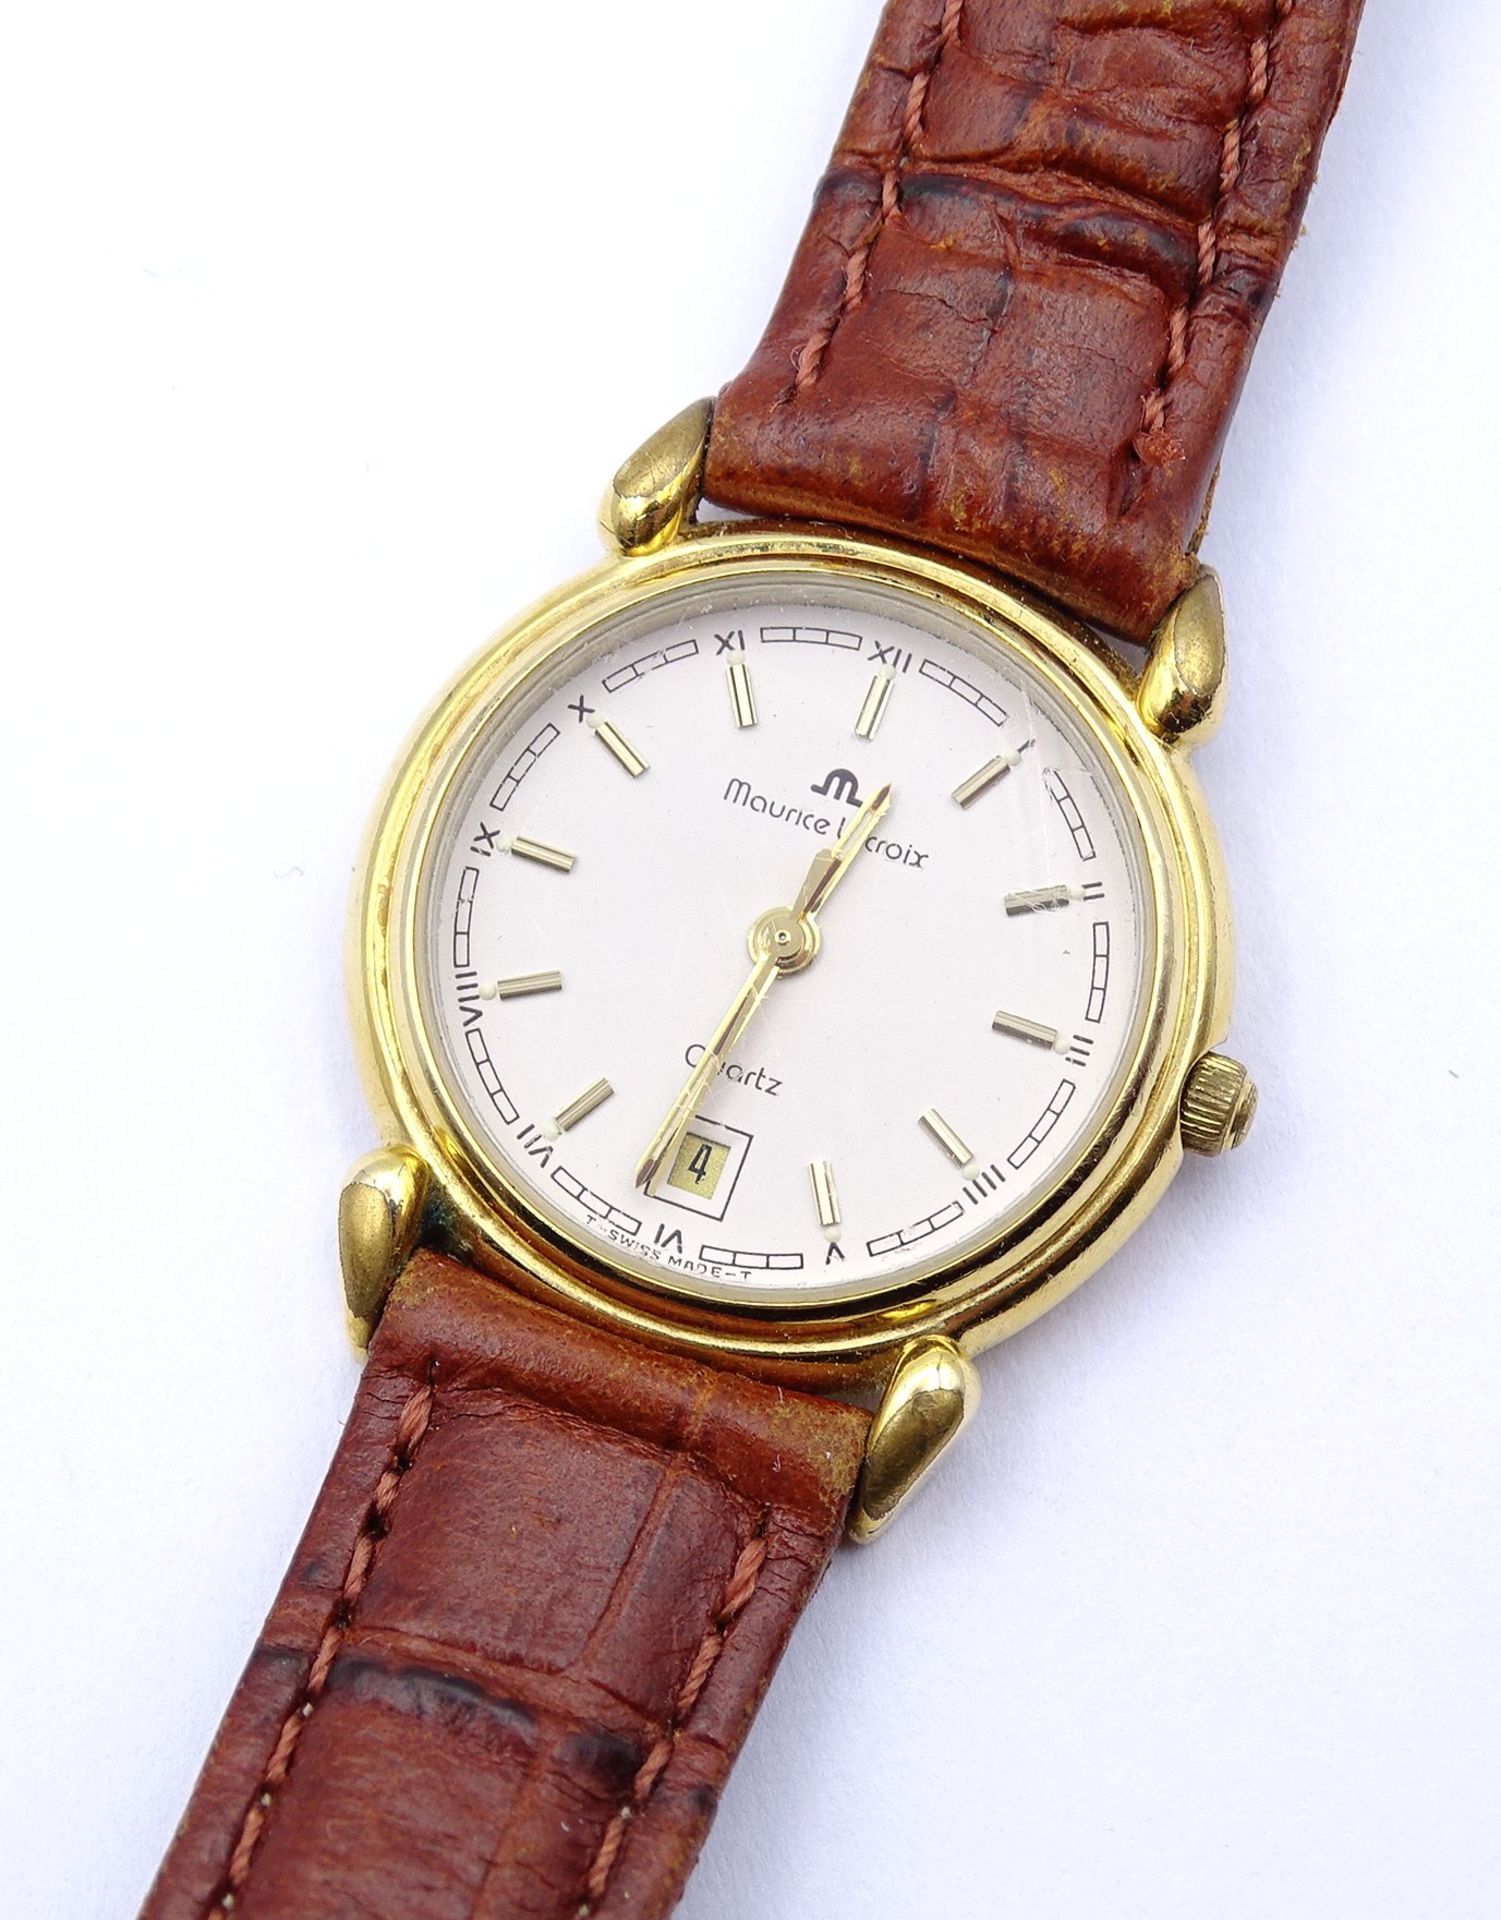 Damen Armbanduhr "Maurice Lacroix", Quartzwerk, D. 25mm, Funktion nicht überprüft, Kratzer auf Glas